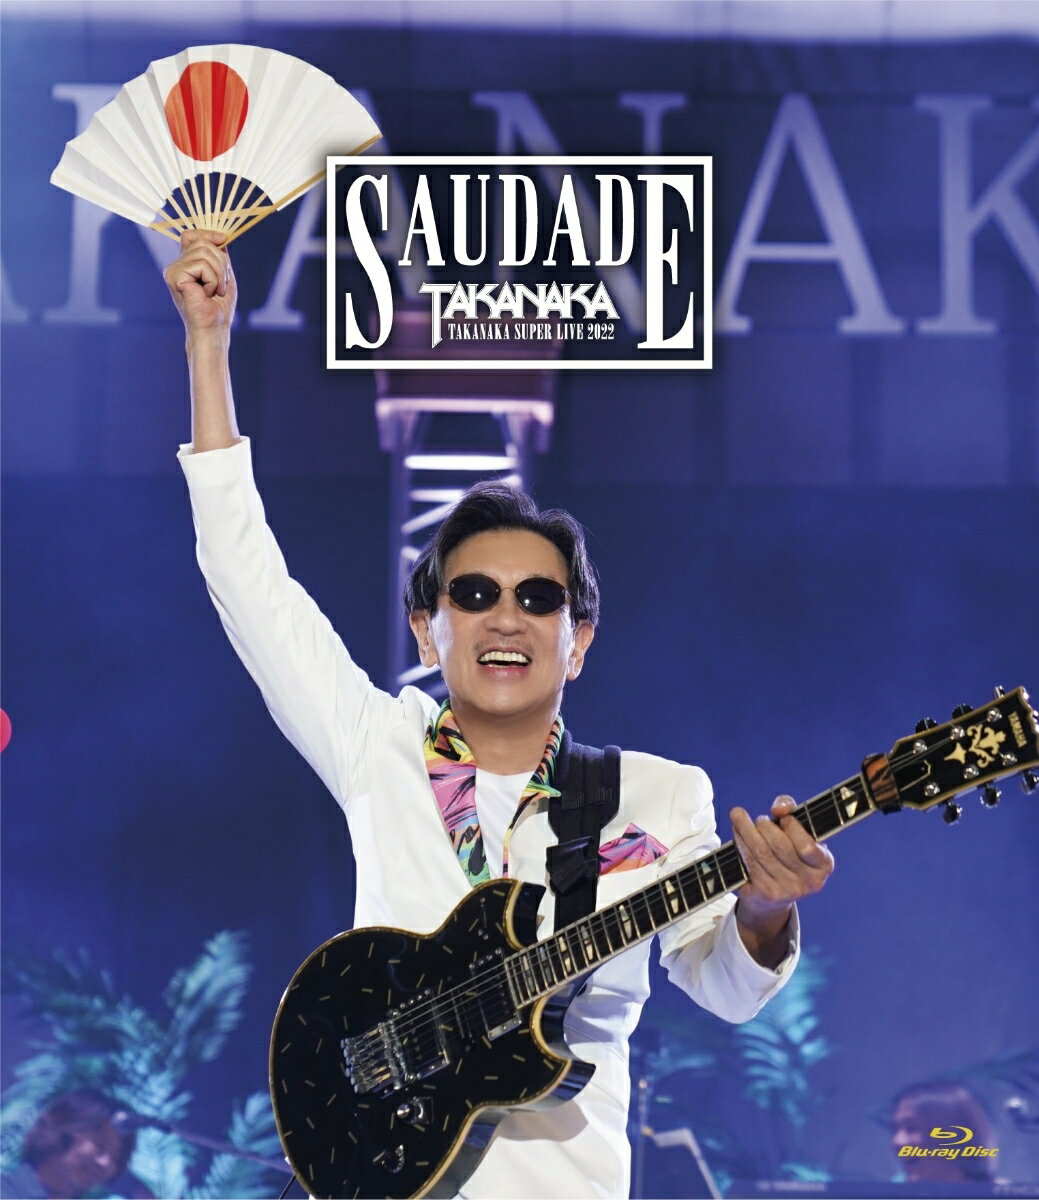 高中正義　TAKANAKA SUPER LIVE 2022 SAUDADE(初回生産限定盤 BD+2CD)【Blu-ray】